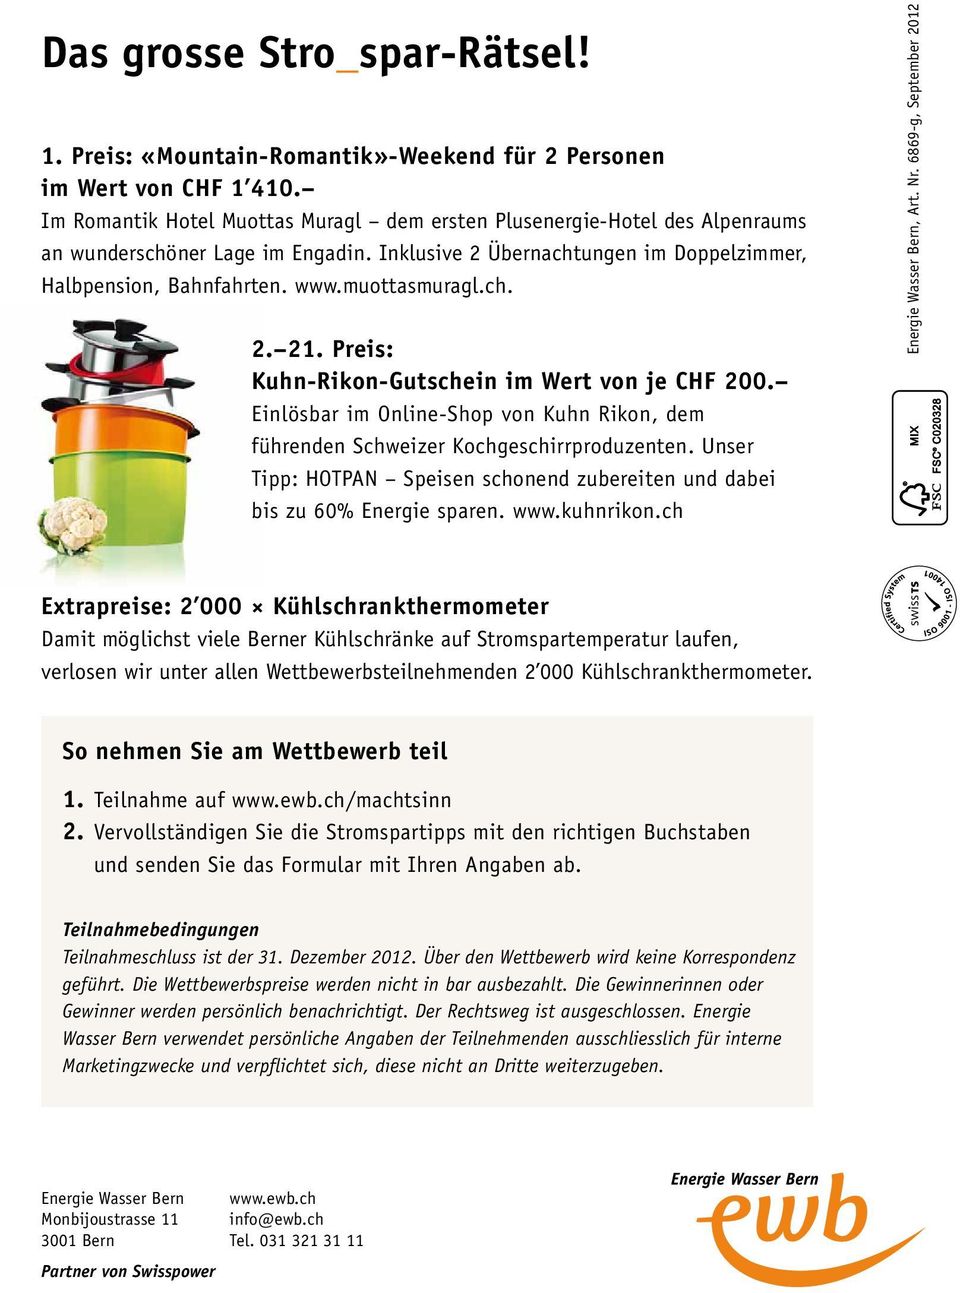 ch. 2. 21. Preis: Kuhn-Rikon-Gutschein im Wert von je CHF 200. Einlösbar im Online-Shop von Kuhn Rikon, dem führenden Schweizer Kochgeschirrproduzenten.